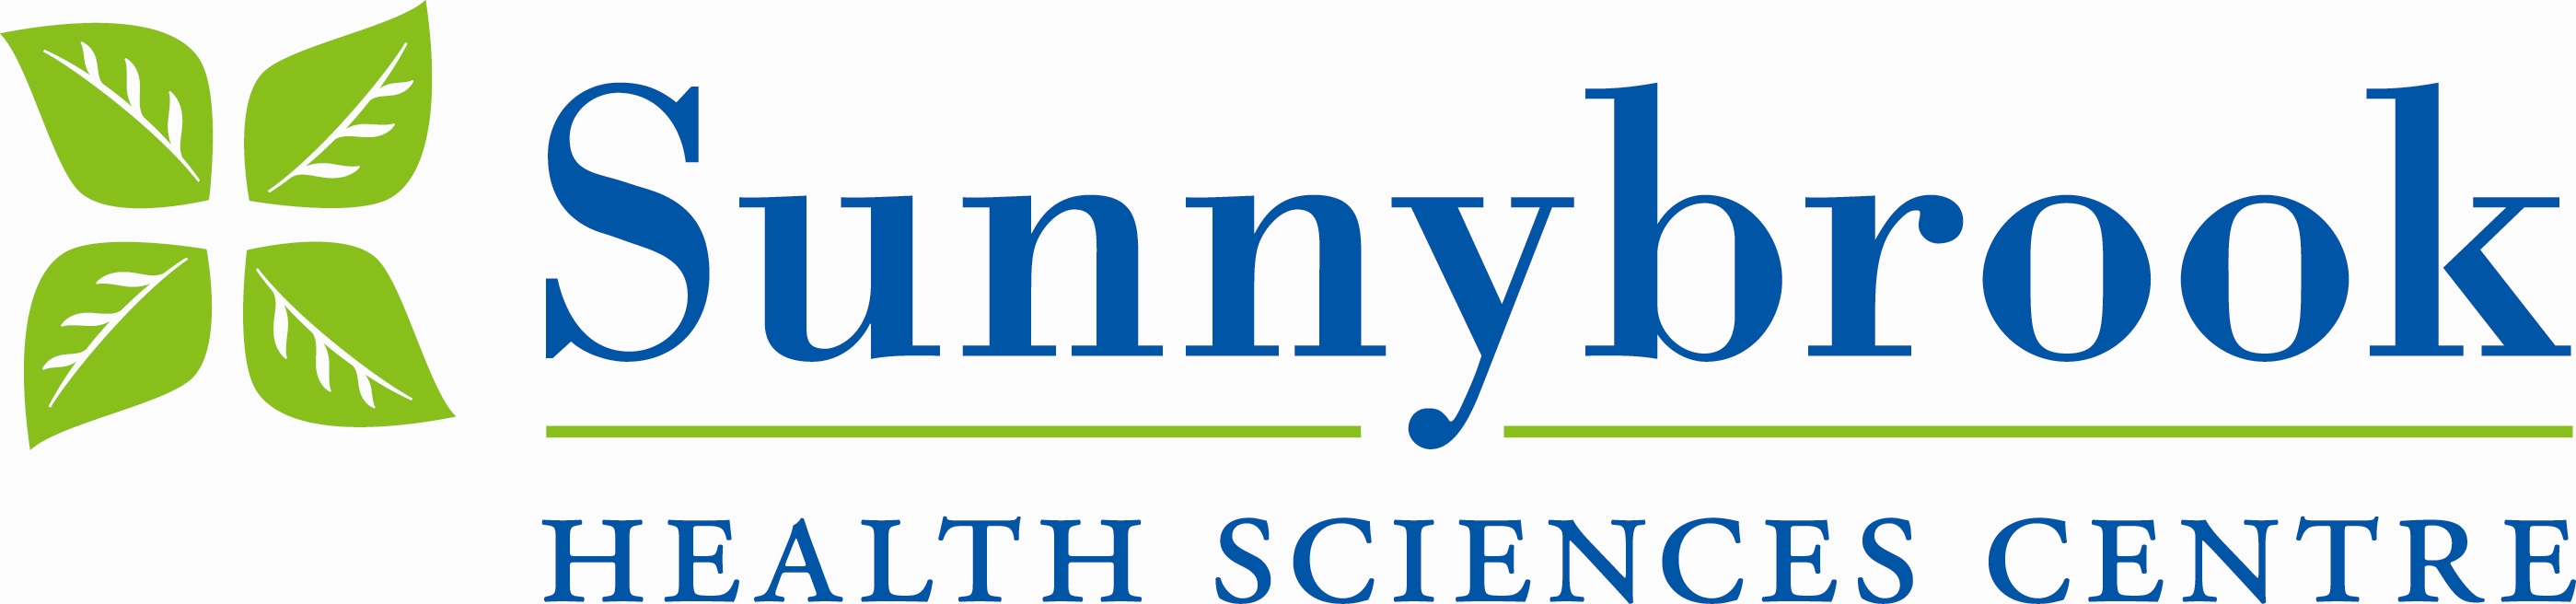 Sunnybrook Health Sciences